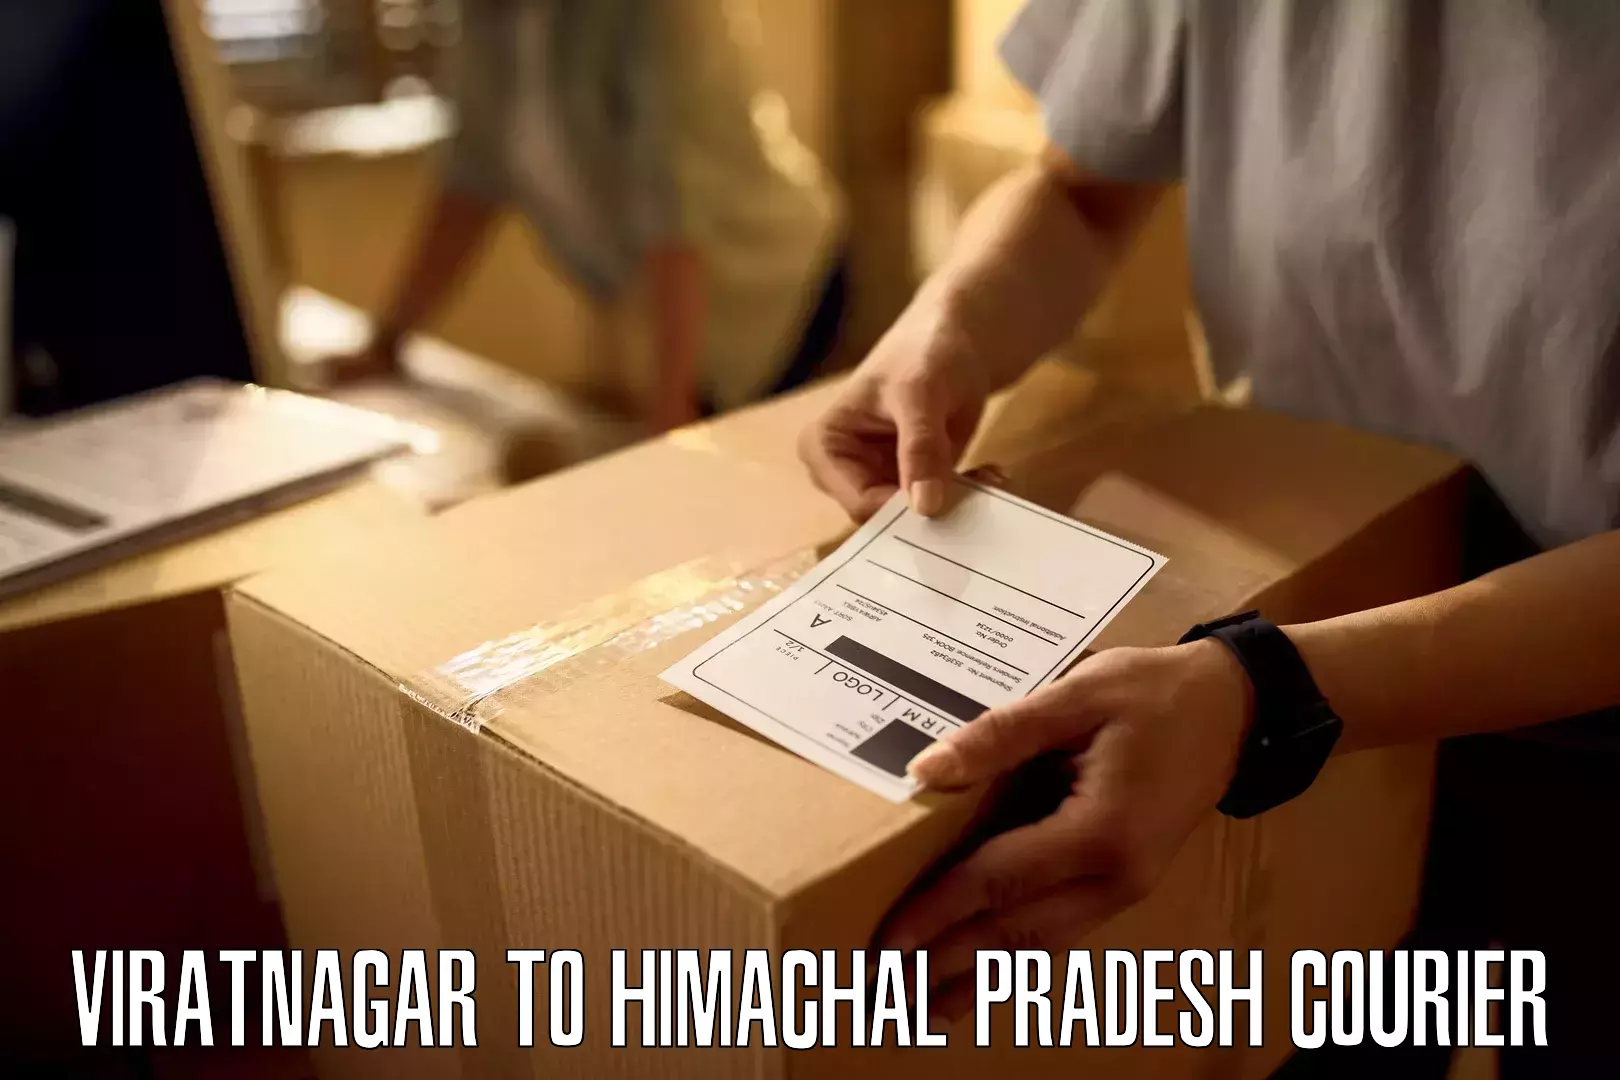 Next-day freight services in Viratnagar to Una Himachal Pradesh